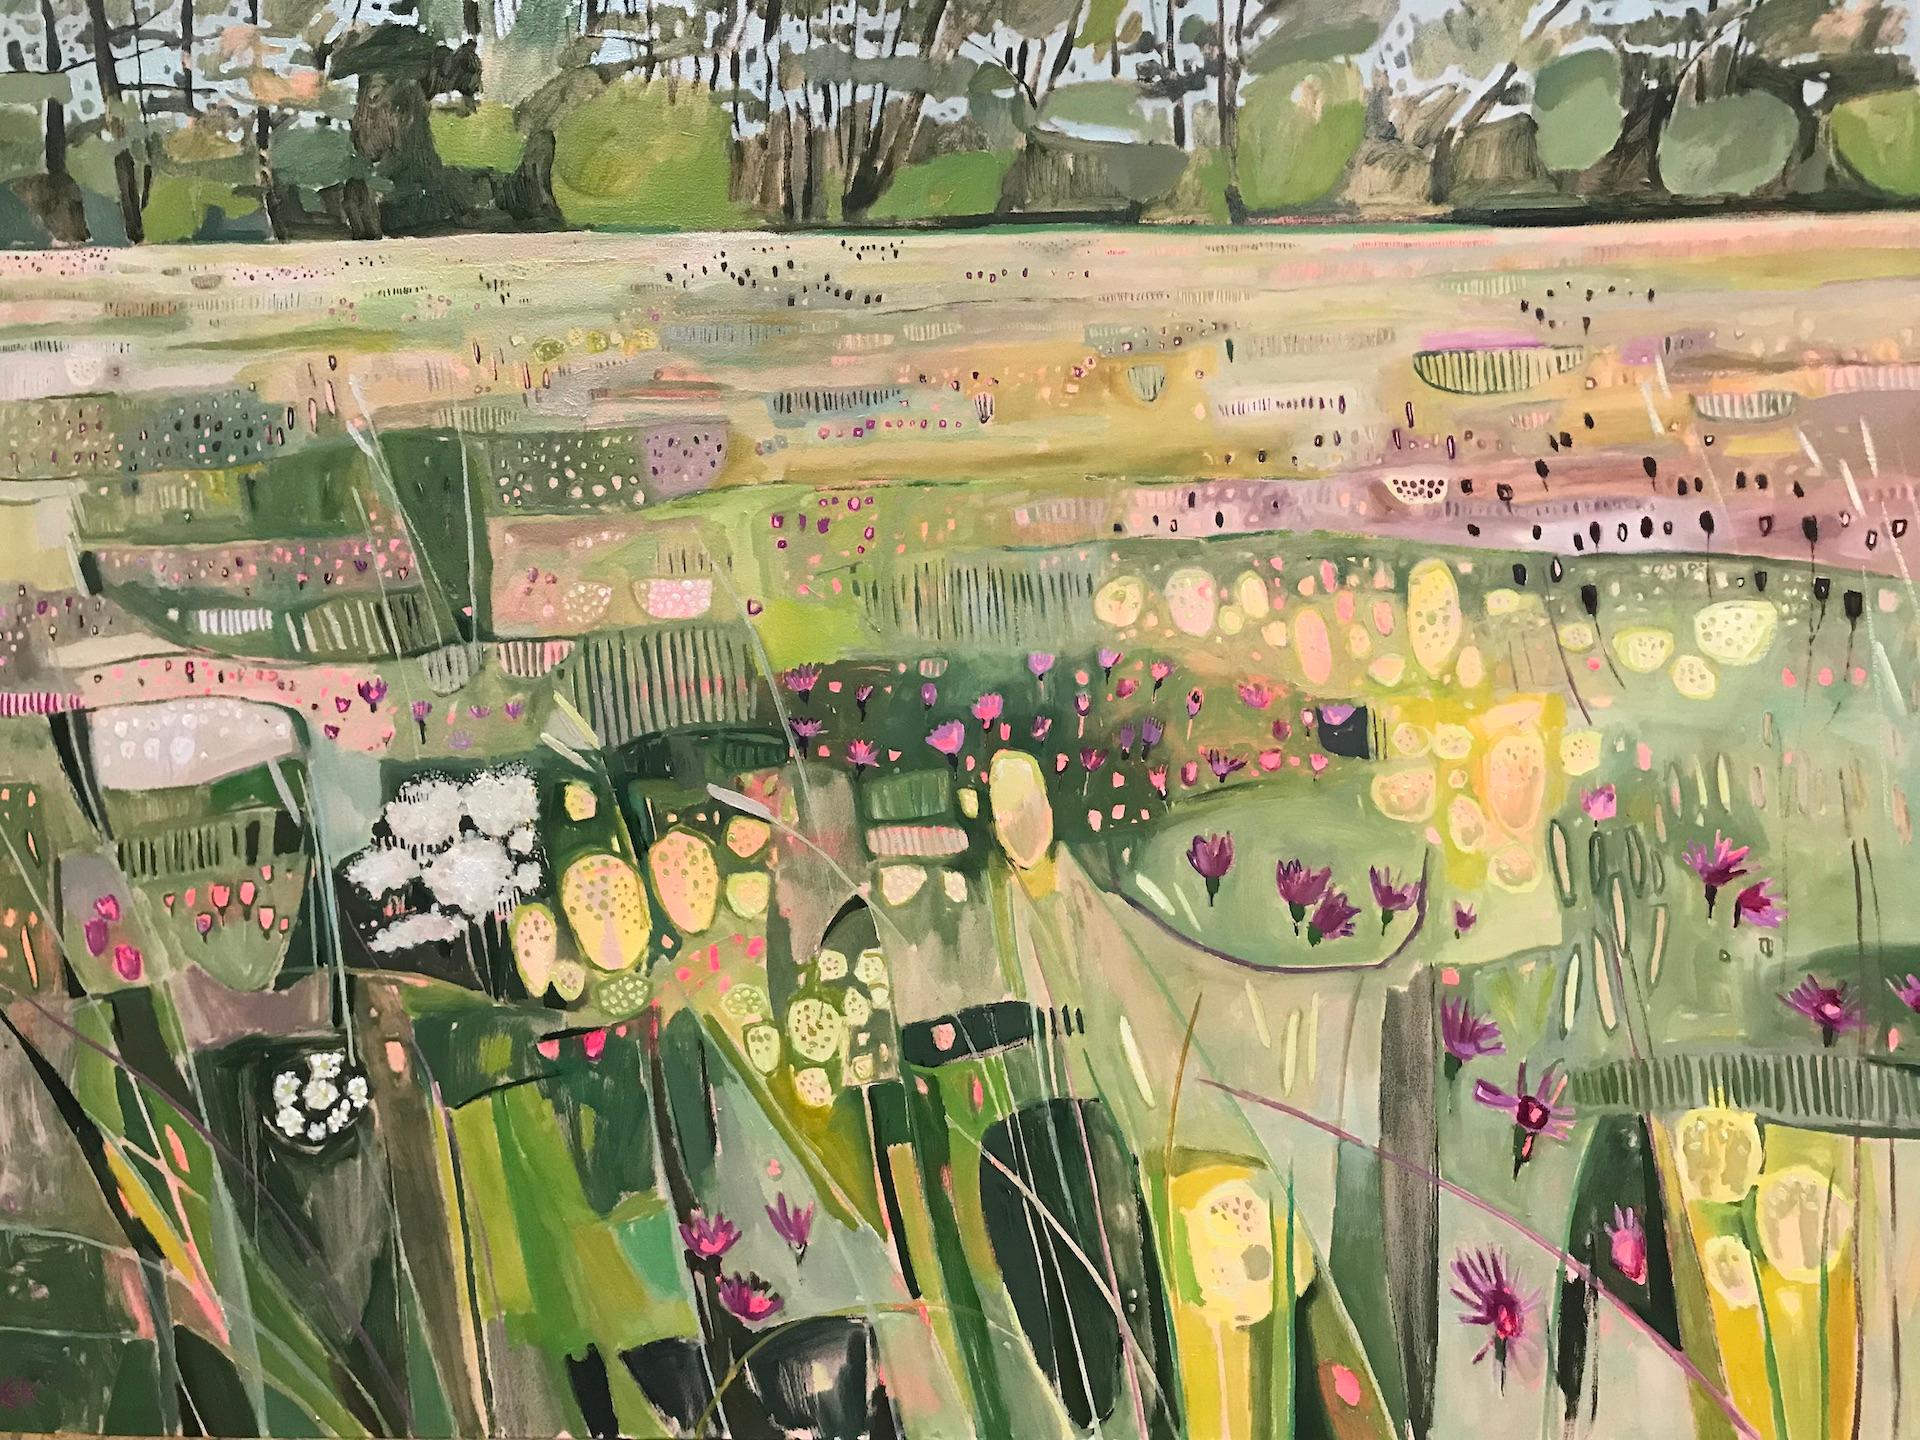 Hinksey Meadows Landscape [2022]
original und handsigniert vom Künstler 

öl und Acryl auf Leinwand

Bildgröße: H:120 cm x B:160 cm

Gesamtgröße des ungerahmten Werks: H:120 cm x B:160 cm x T:3,5cm

Ungerahmt verkauft

Bitte beachten Sie, dass die